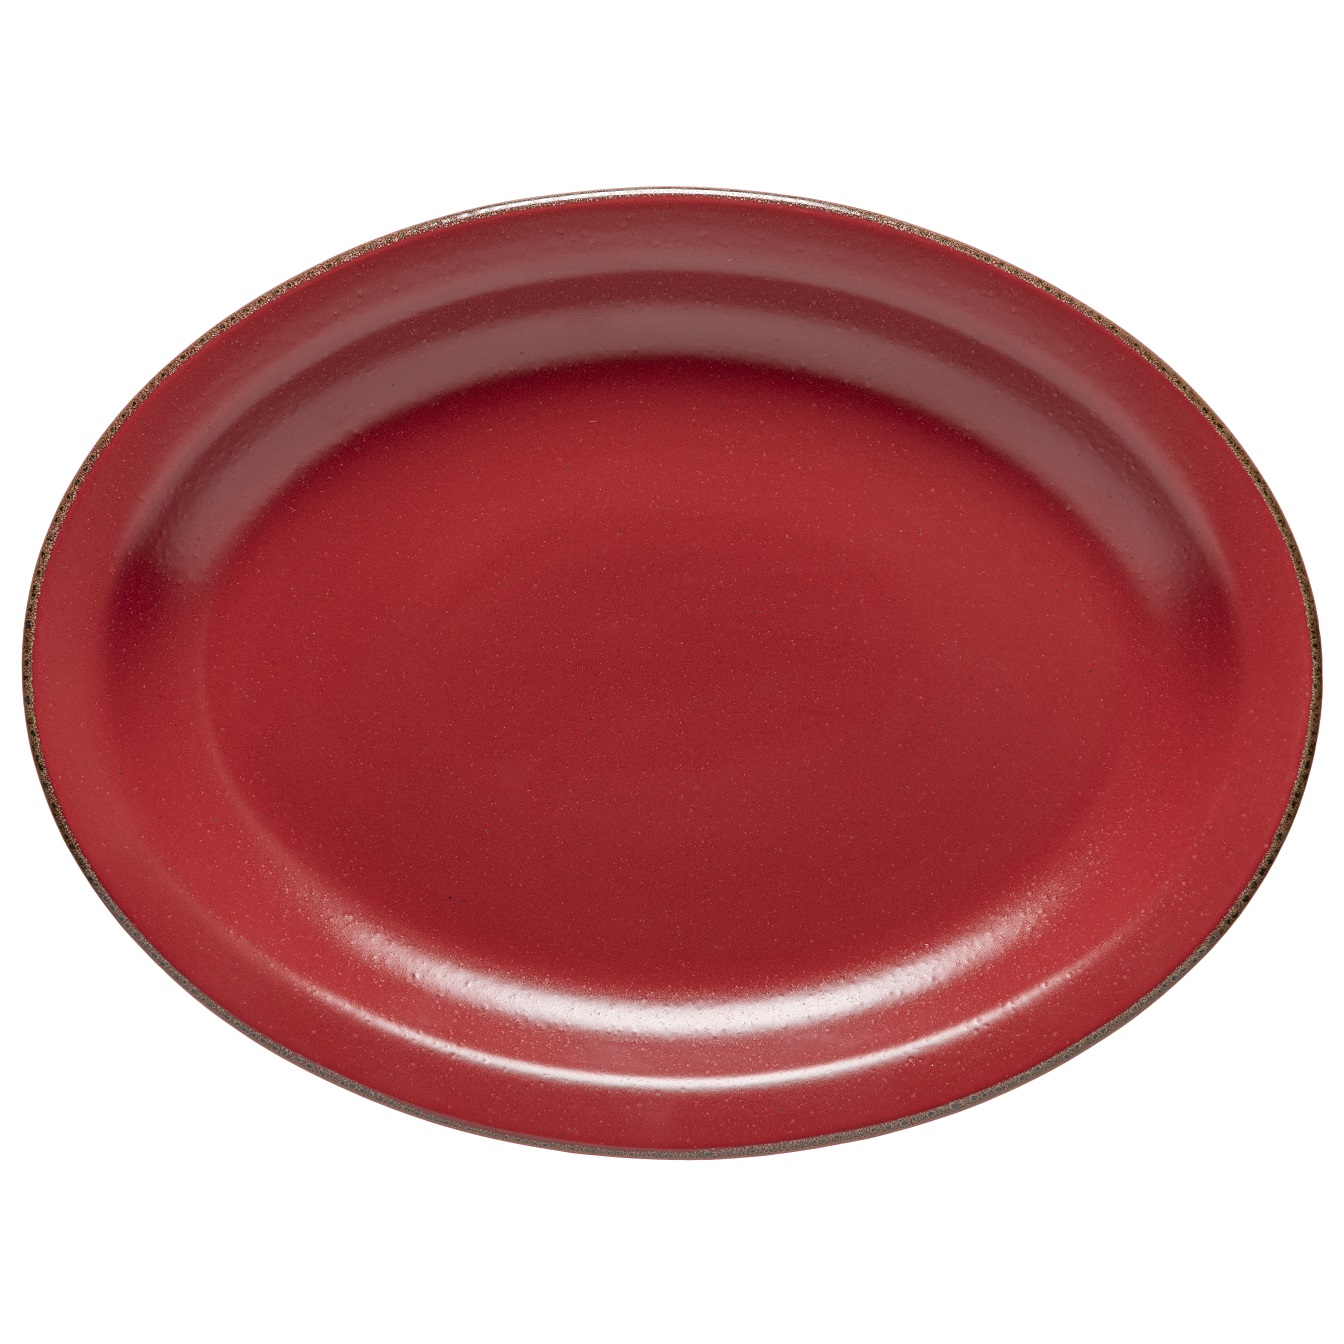 Positano Amora Oval Platter 40cm Gift